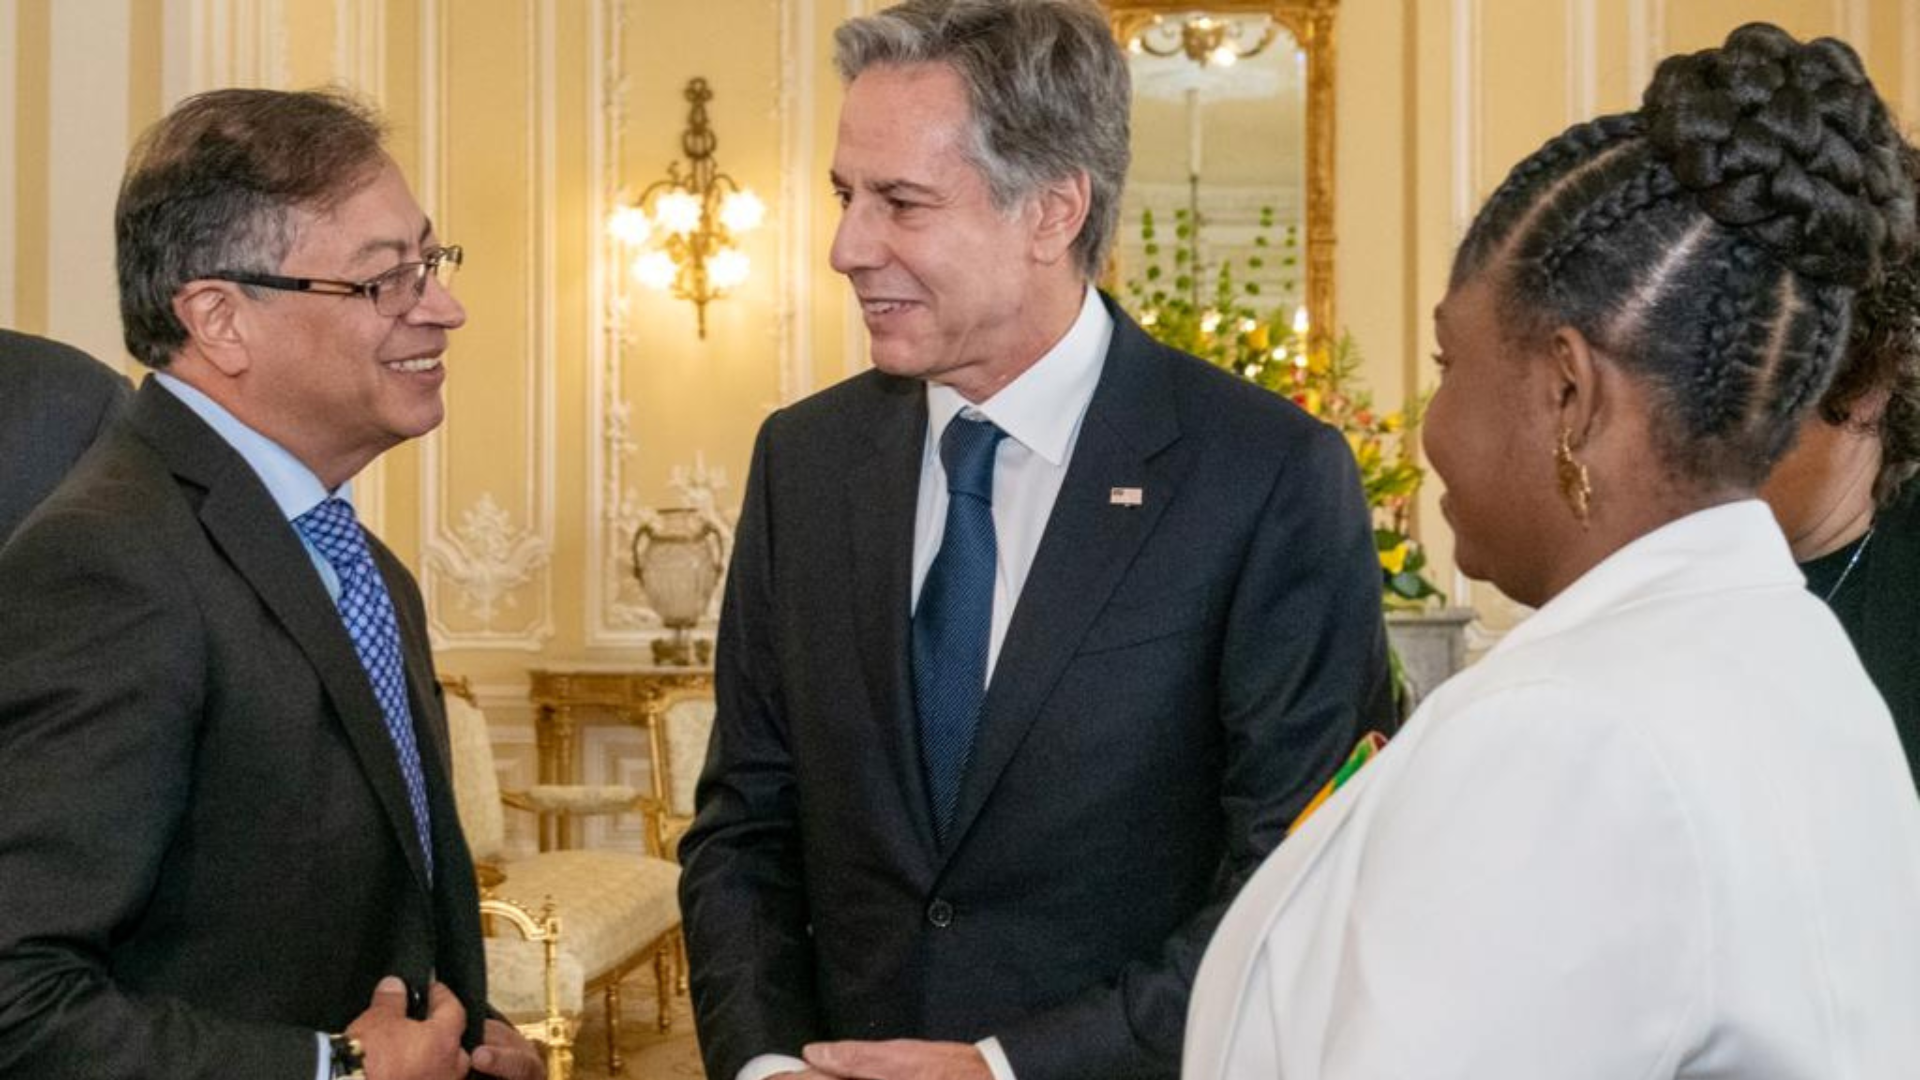 Reunión entre Gustavo Petro y Antony Blinken, secretario de Estado de EE.UU.
Foto: Presidencia de la República